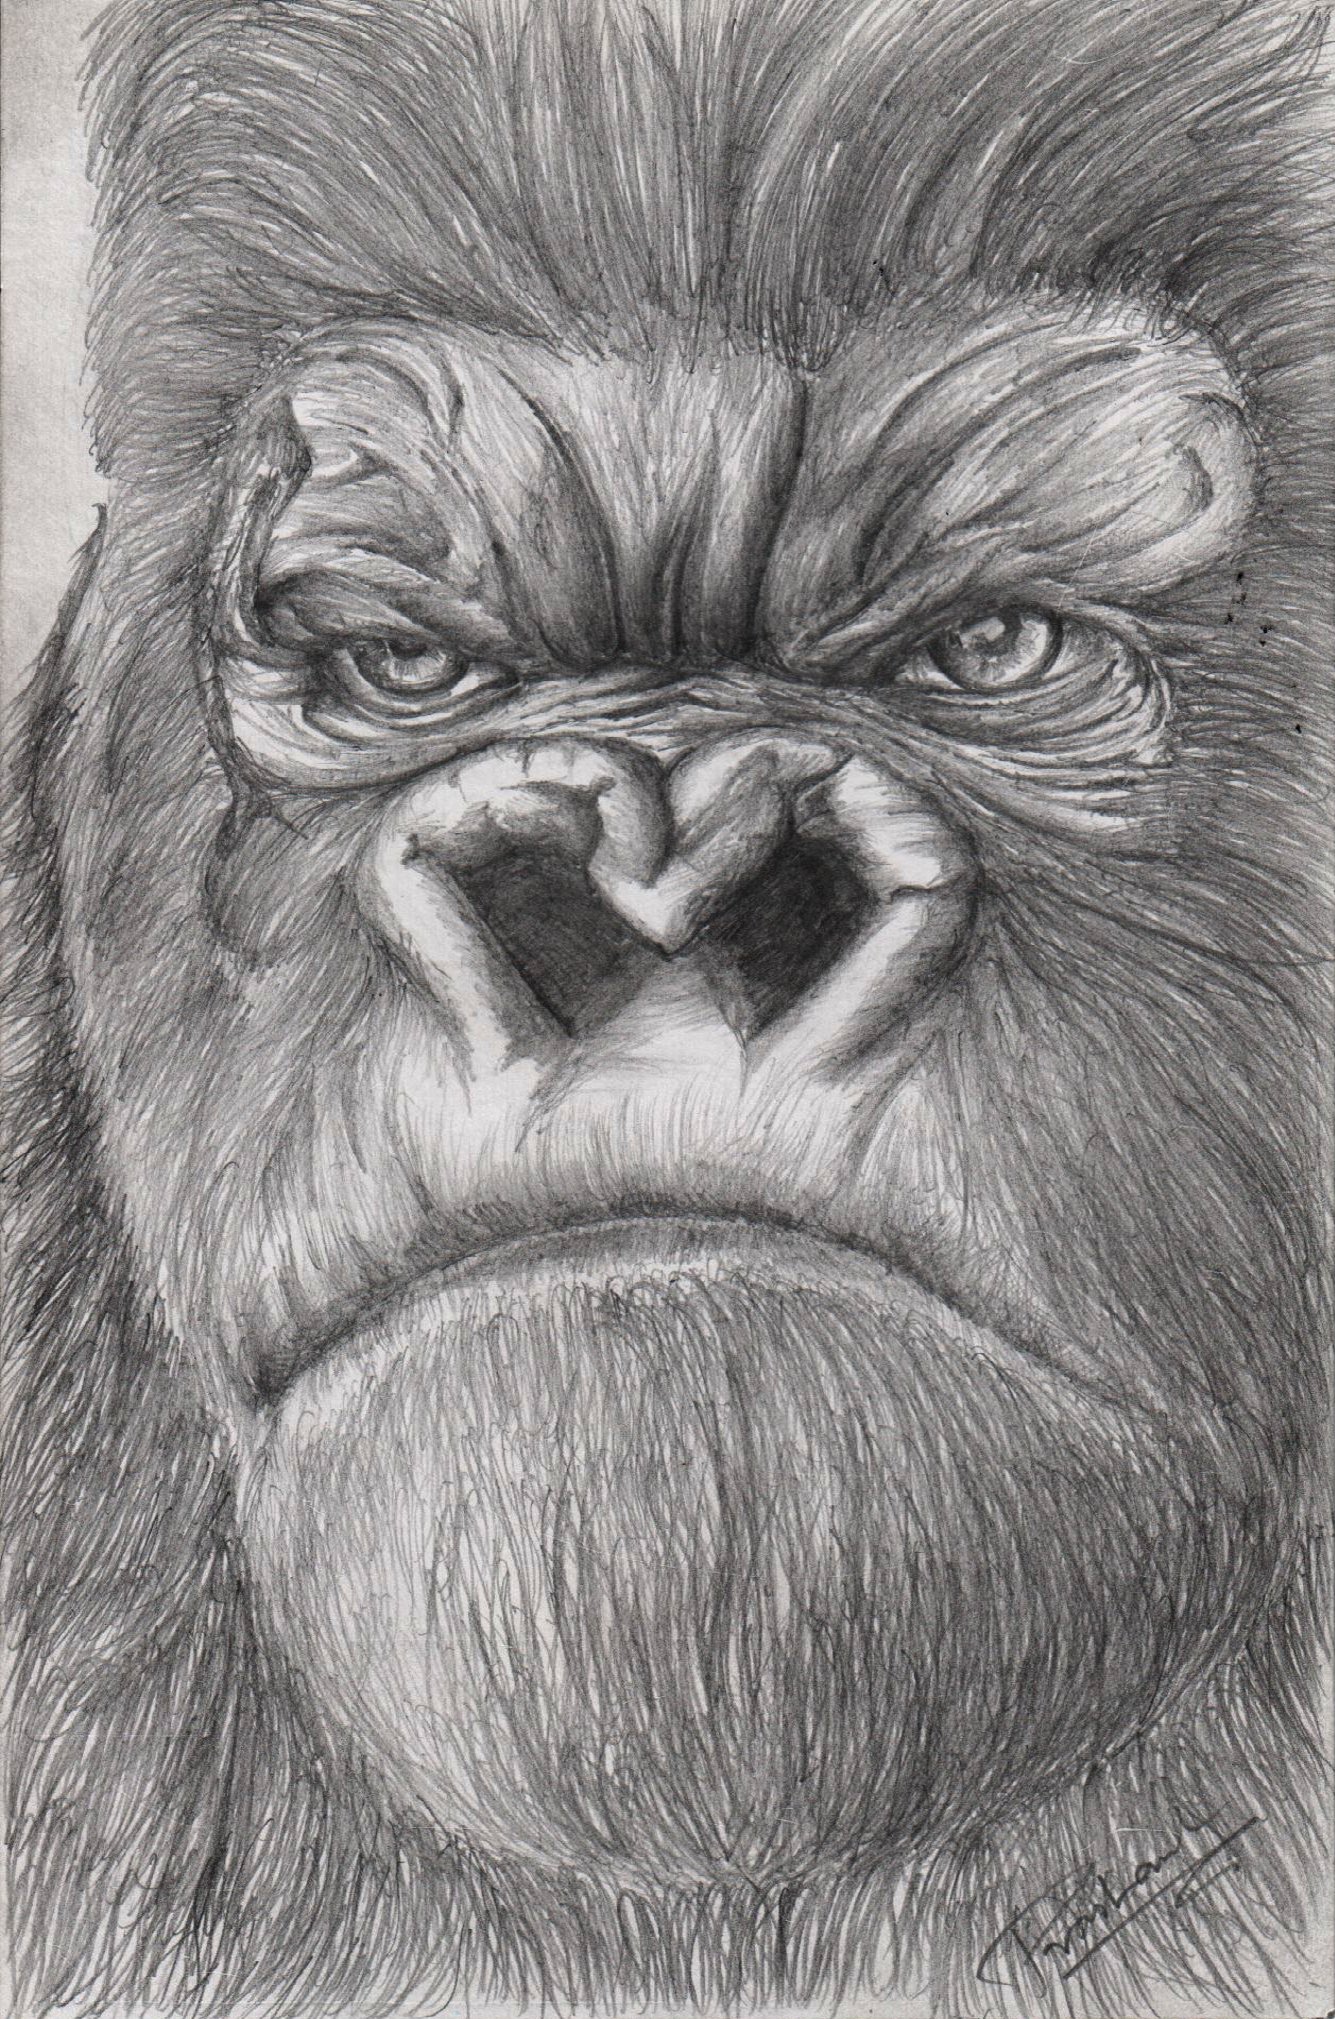 King Kong Pencil Drawing - animals Pencil Drawing